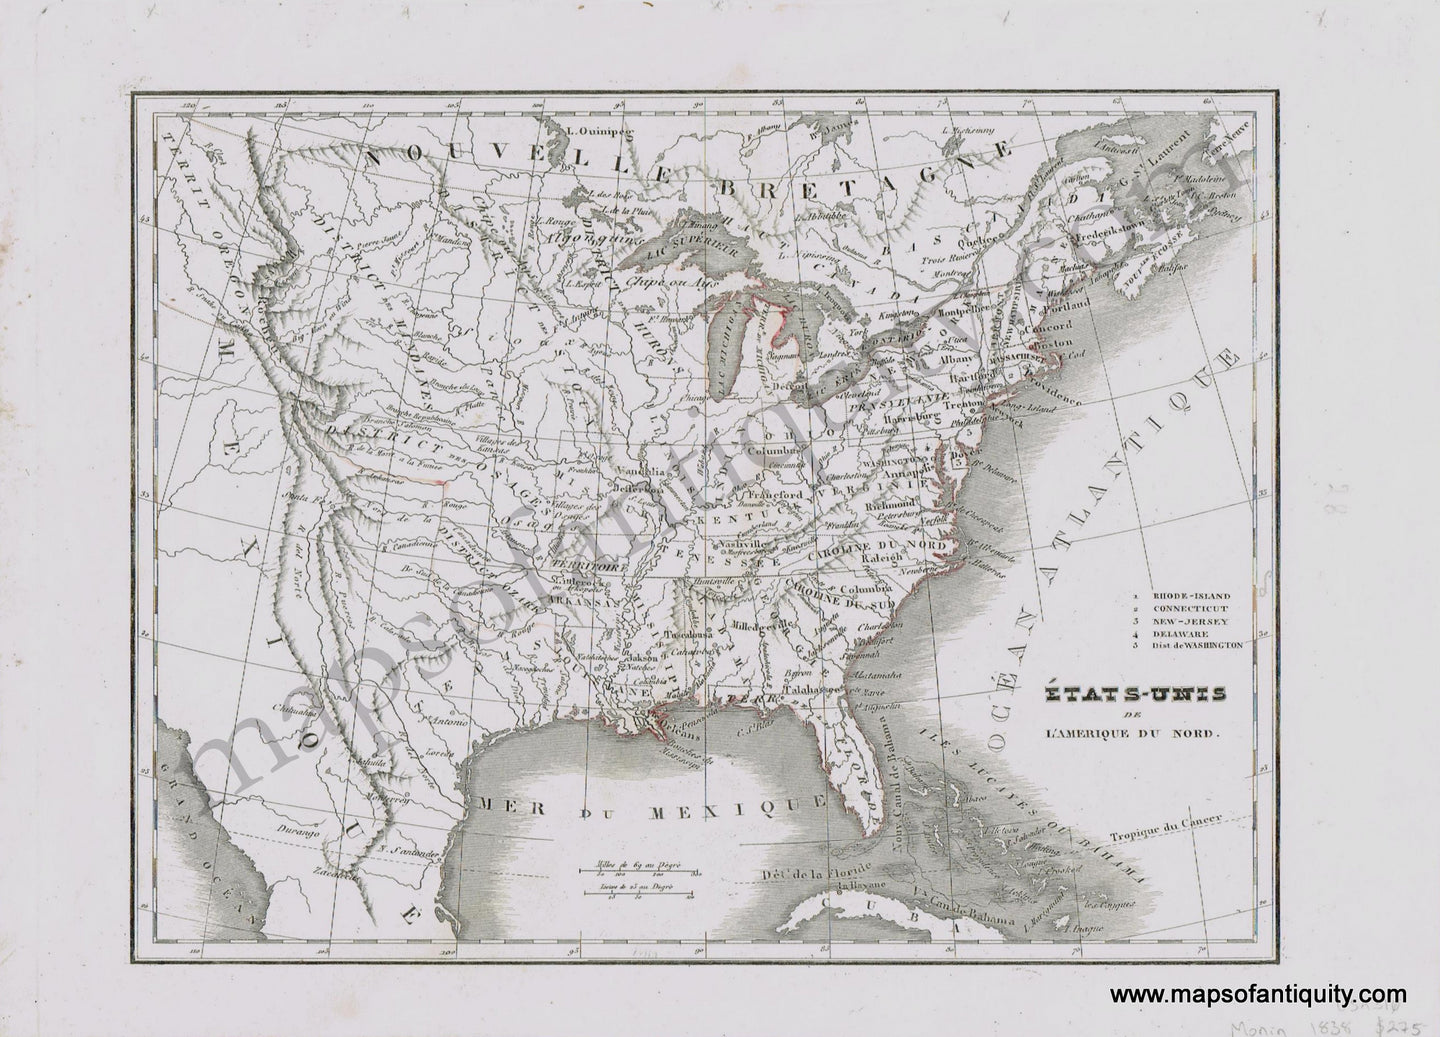 Antique-Hand-Colored-Map-Etats-Unis-de-l'Amerique-du-Nord-1838-Monin-1800s-19th-century-Maps-of-Antiquity